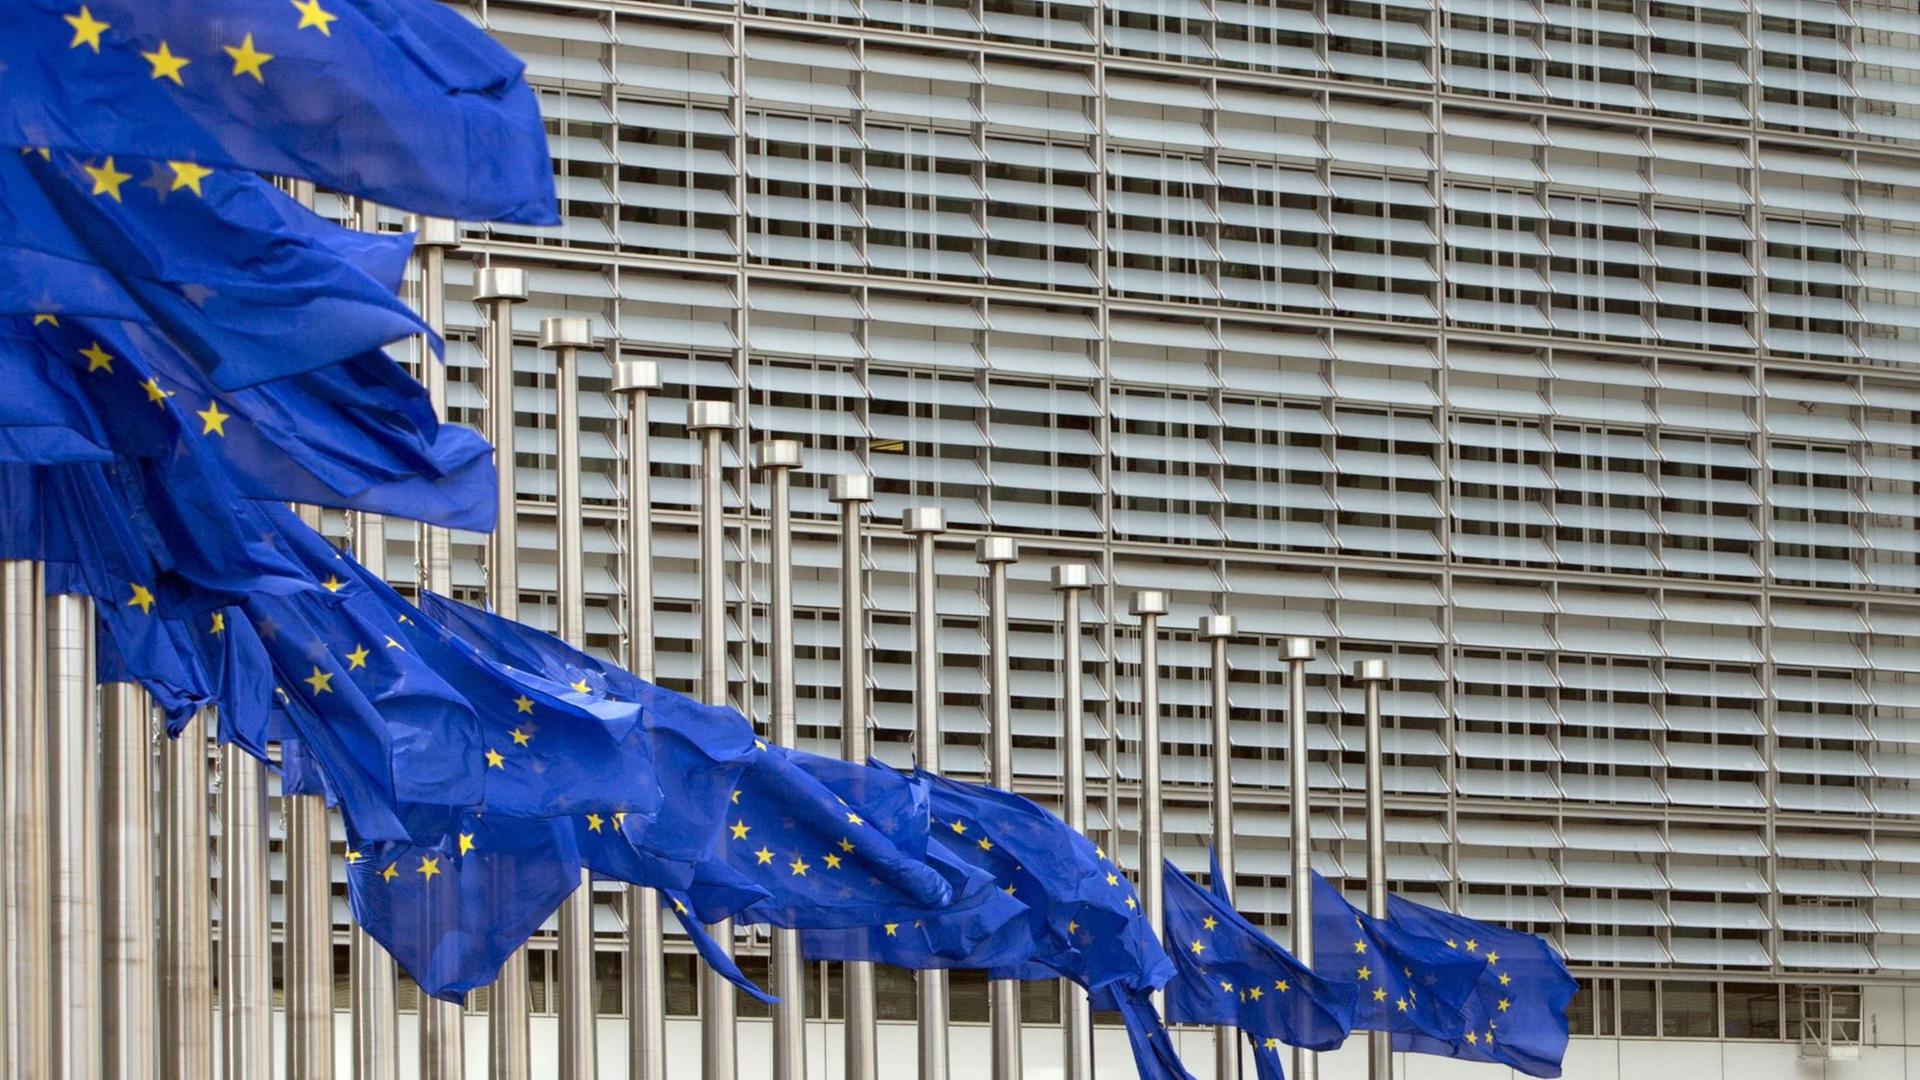 Nach dem Anschlag auf ein Popkonzert in Manchester hängen die EU-Flaggen in Brüssel auf Halbmast.